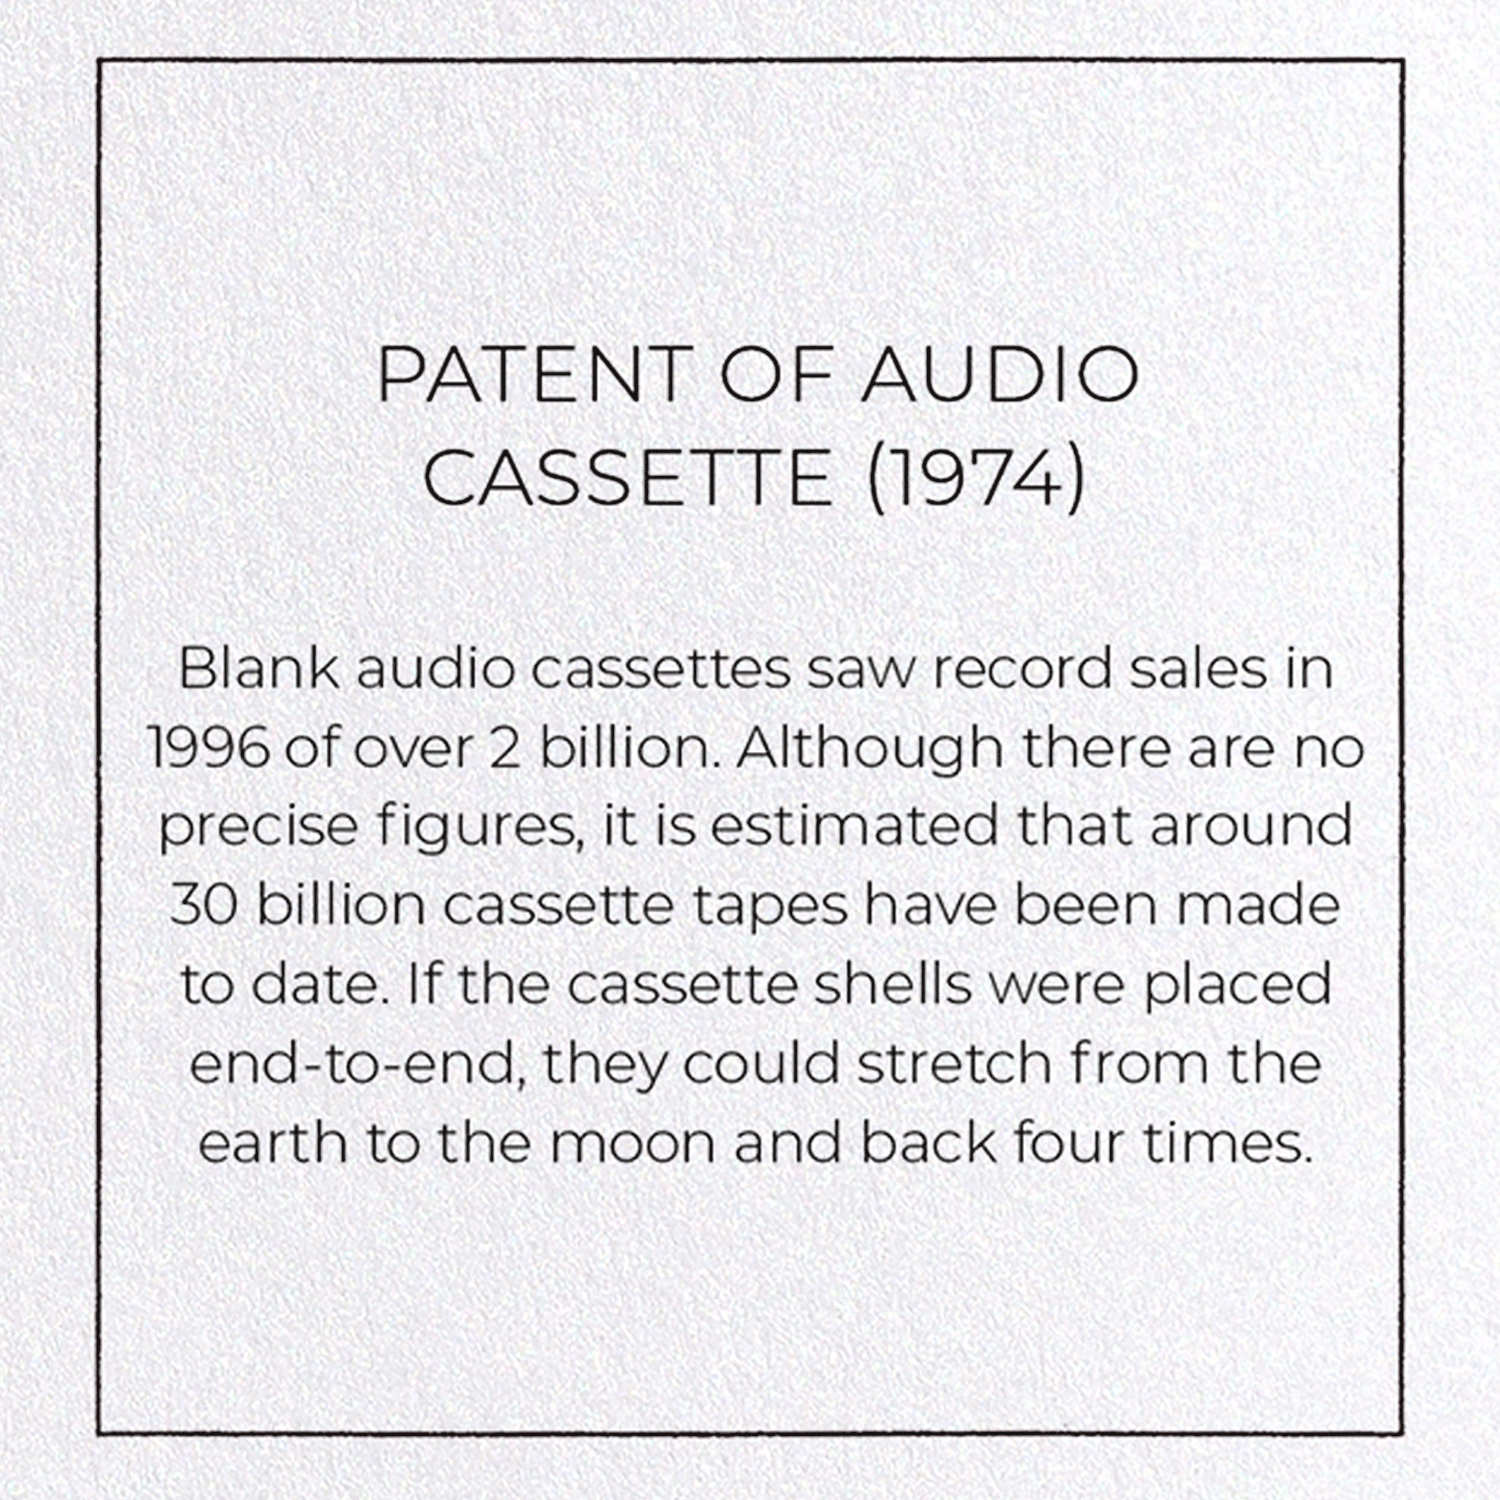 PATENT OF AUDIO CASSETTE (1974)